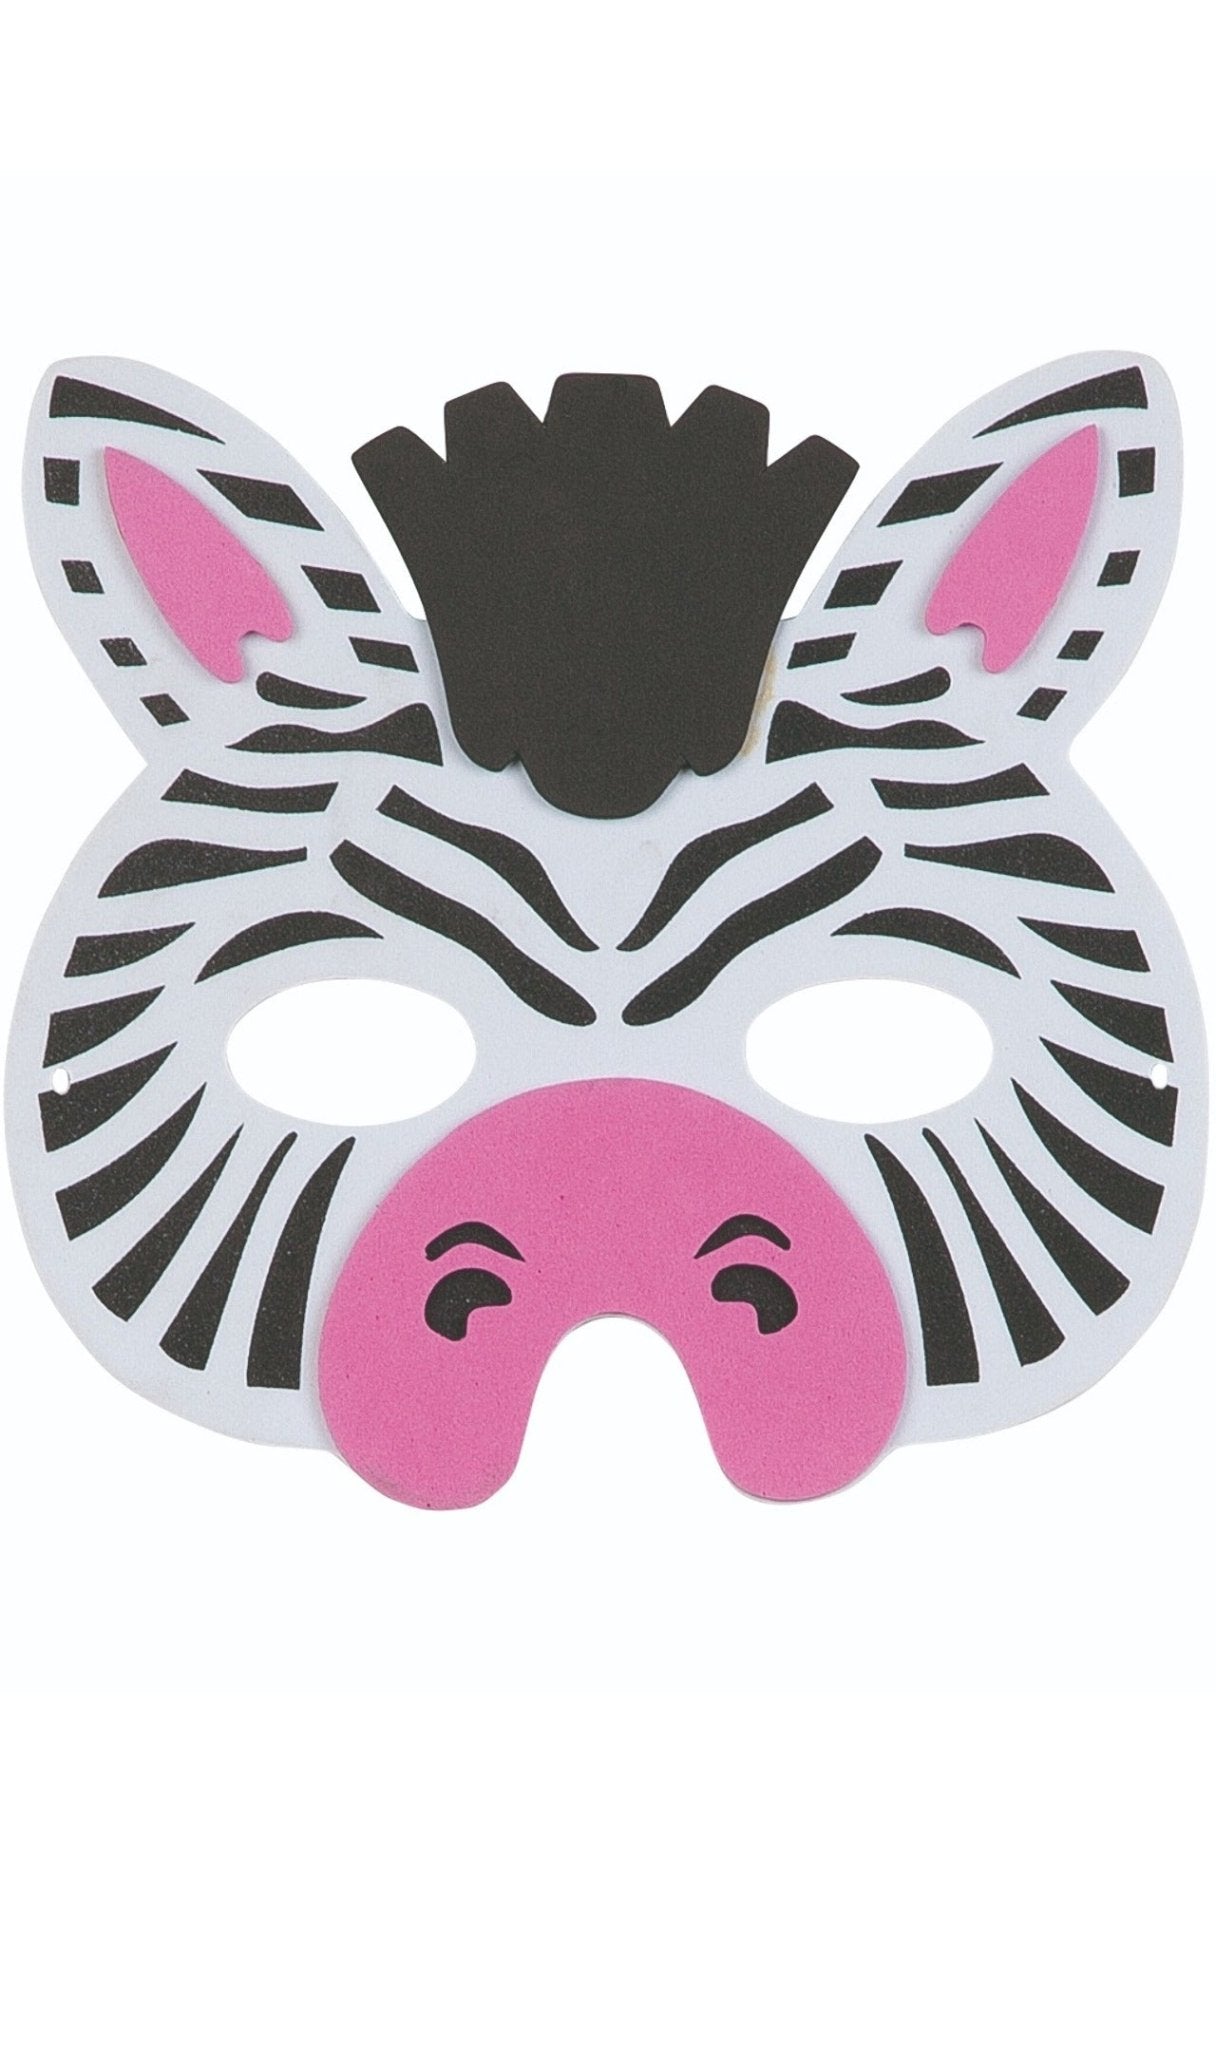 Máscara de Zebra com Riscas